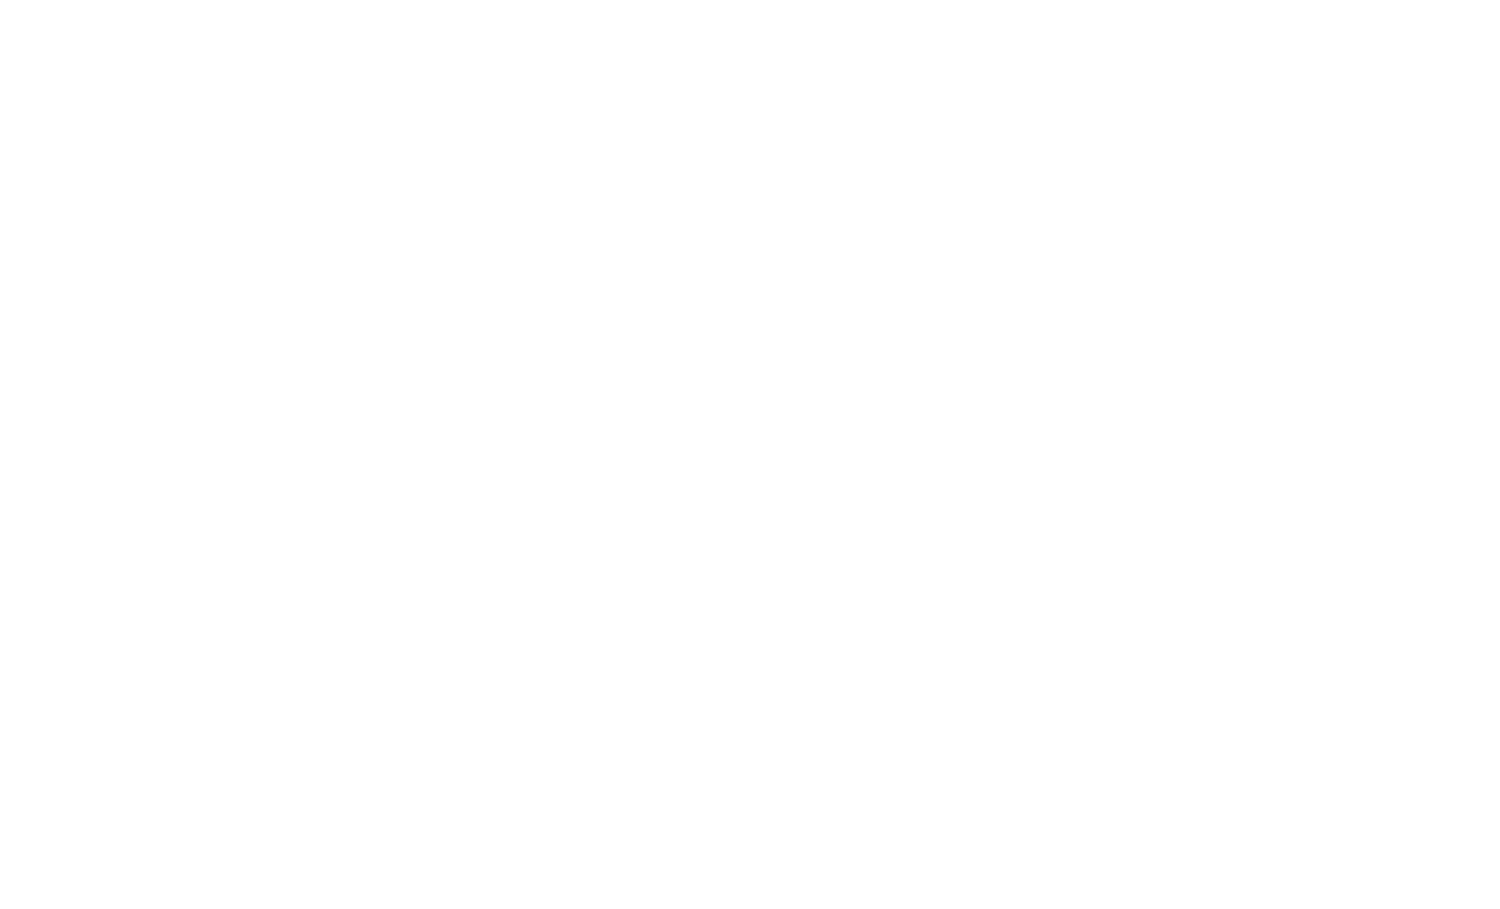 geoffreybawa